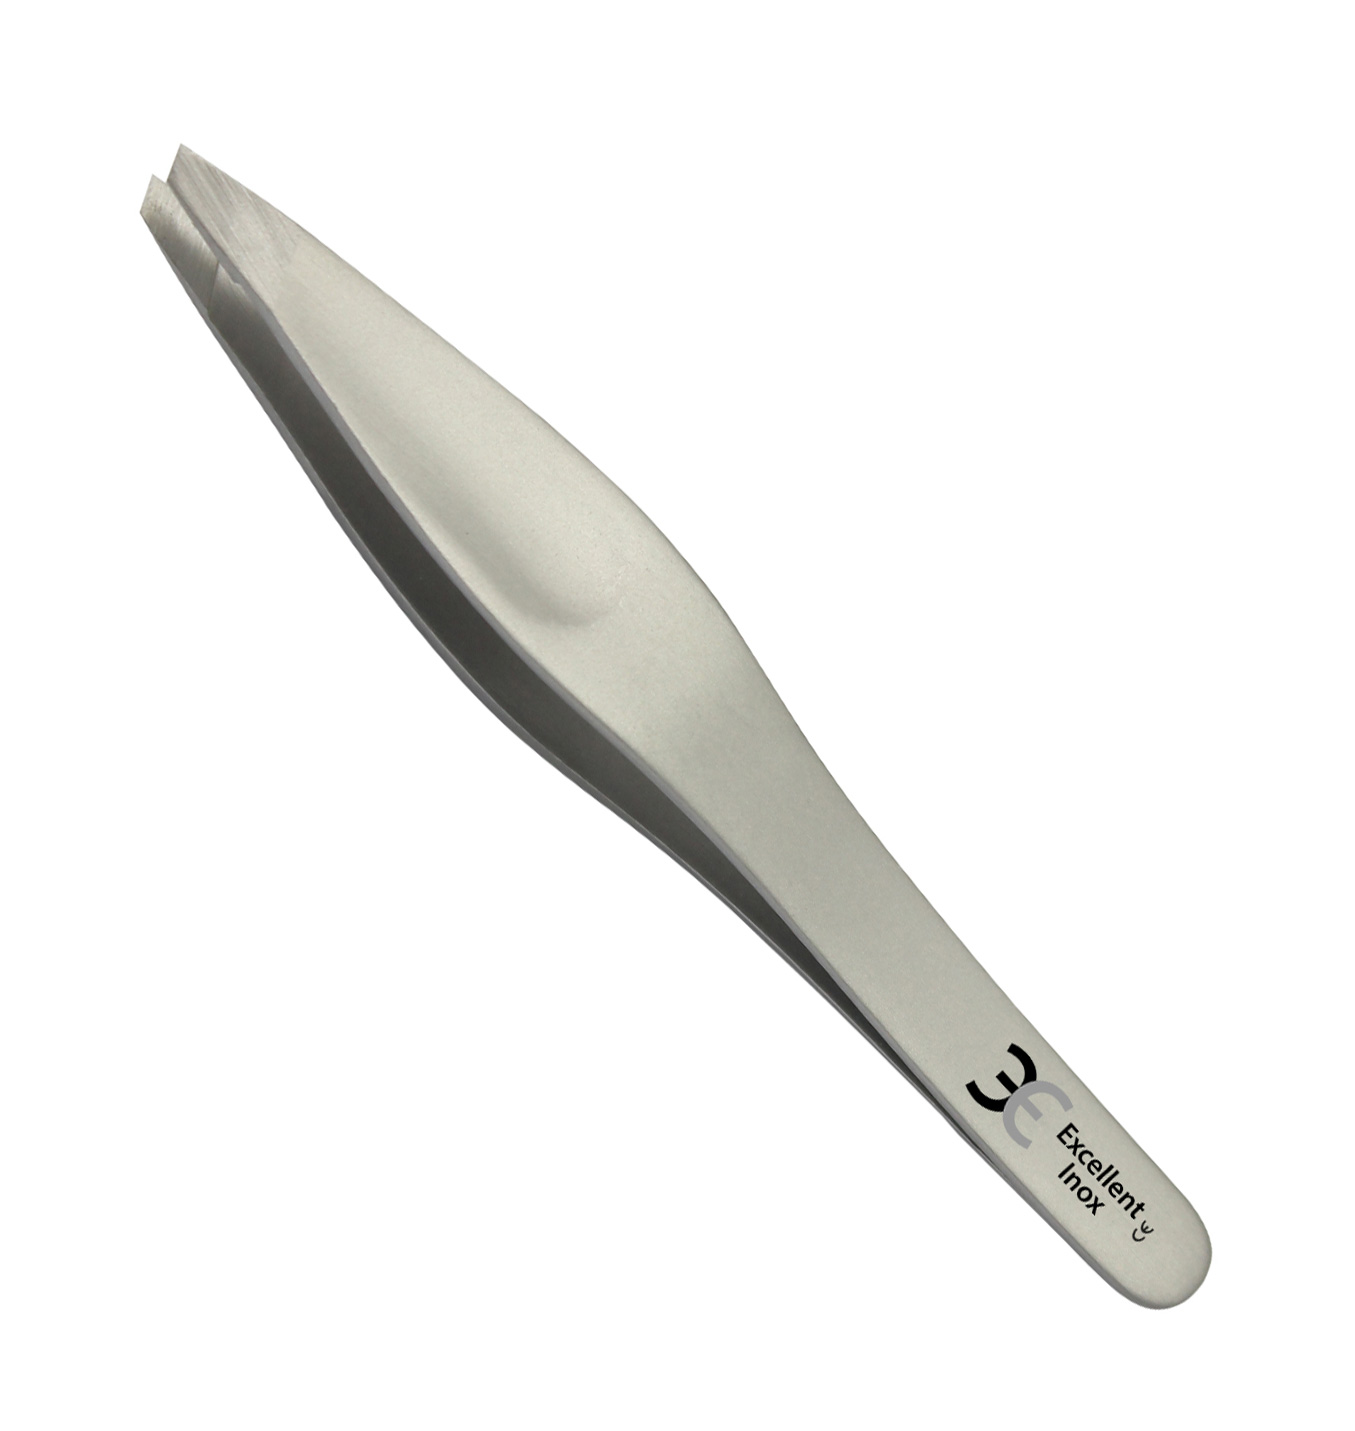 Excellent hair plucking tweezers 9.0 cm, wide handle, slanted